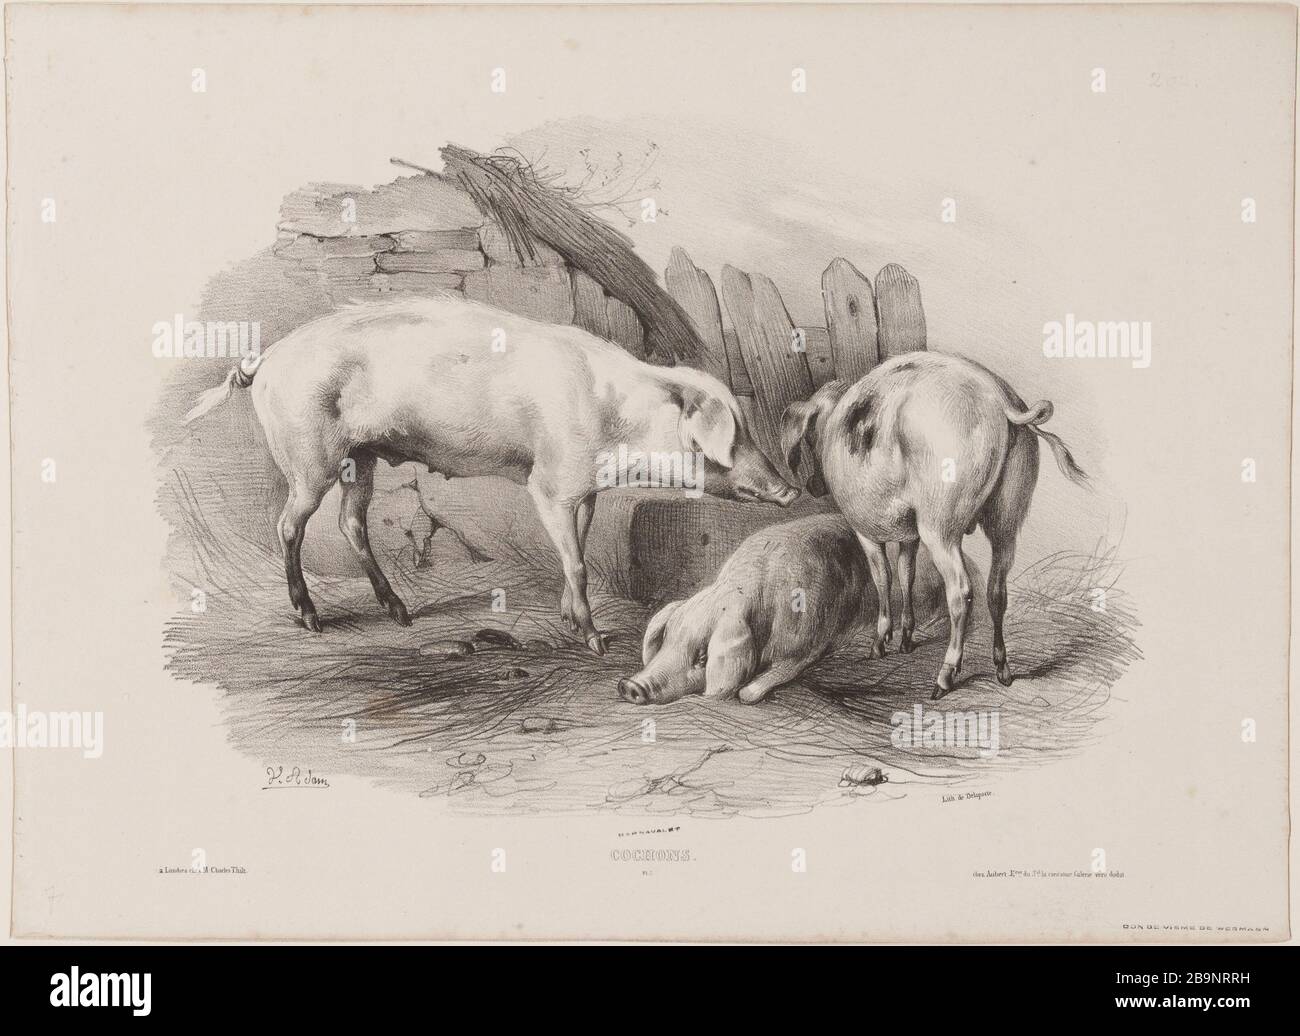 Pigs (pl.7) Jean-Victor Vincent Adam (1801-1866), peintre et lithographe français. Cochons (pl.7). Lithographie au crayon, XIXème siècle. Paris, musée Carnavalet. Stock Photo